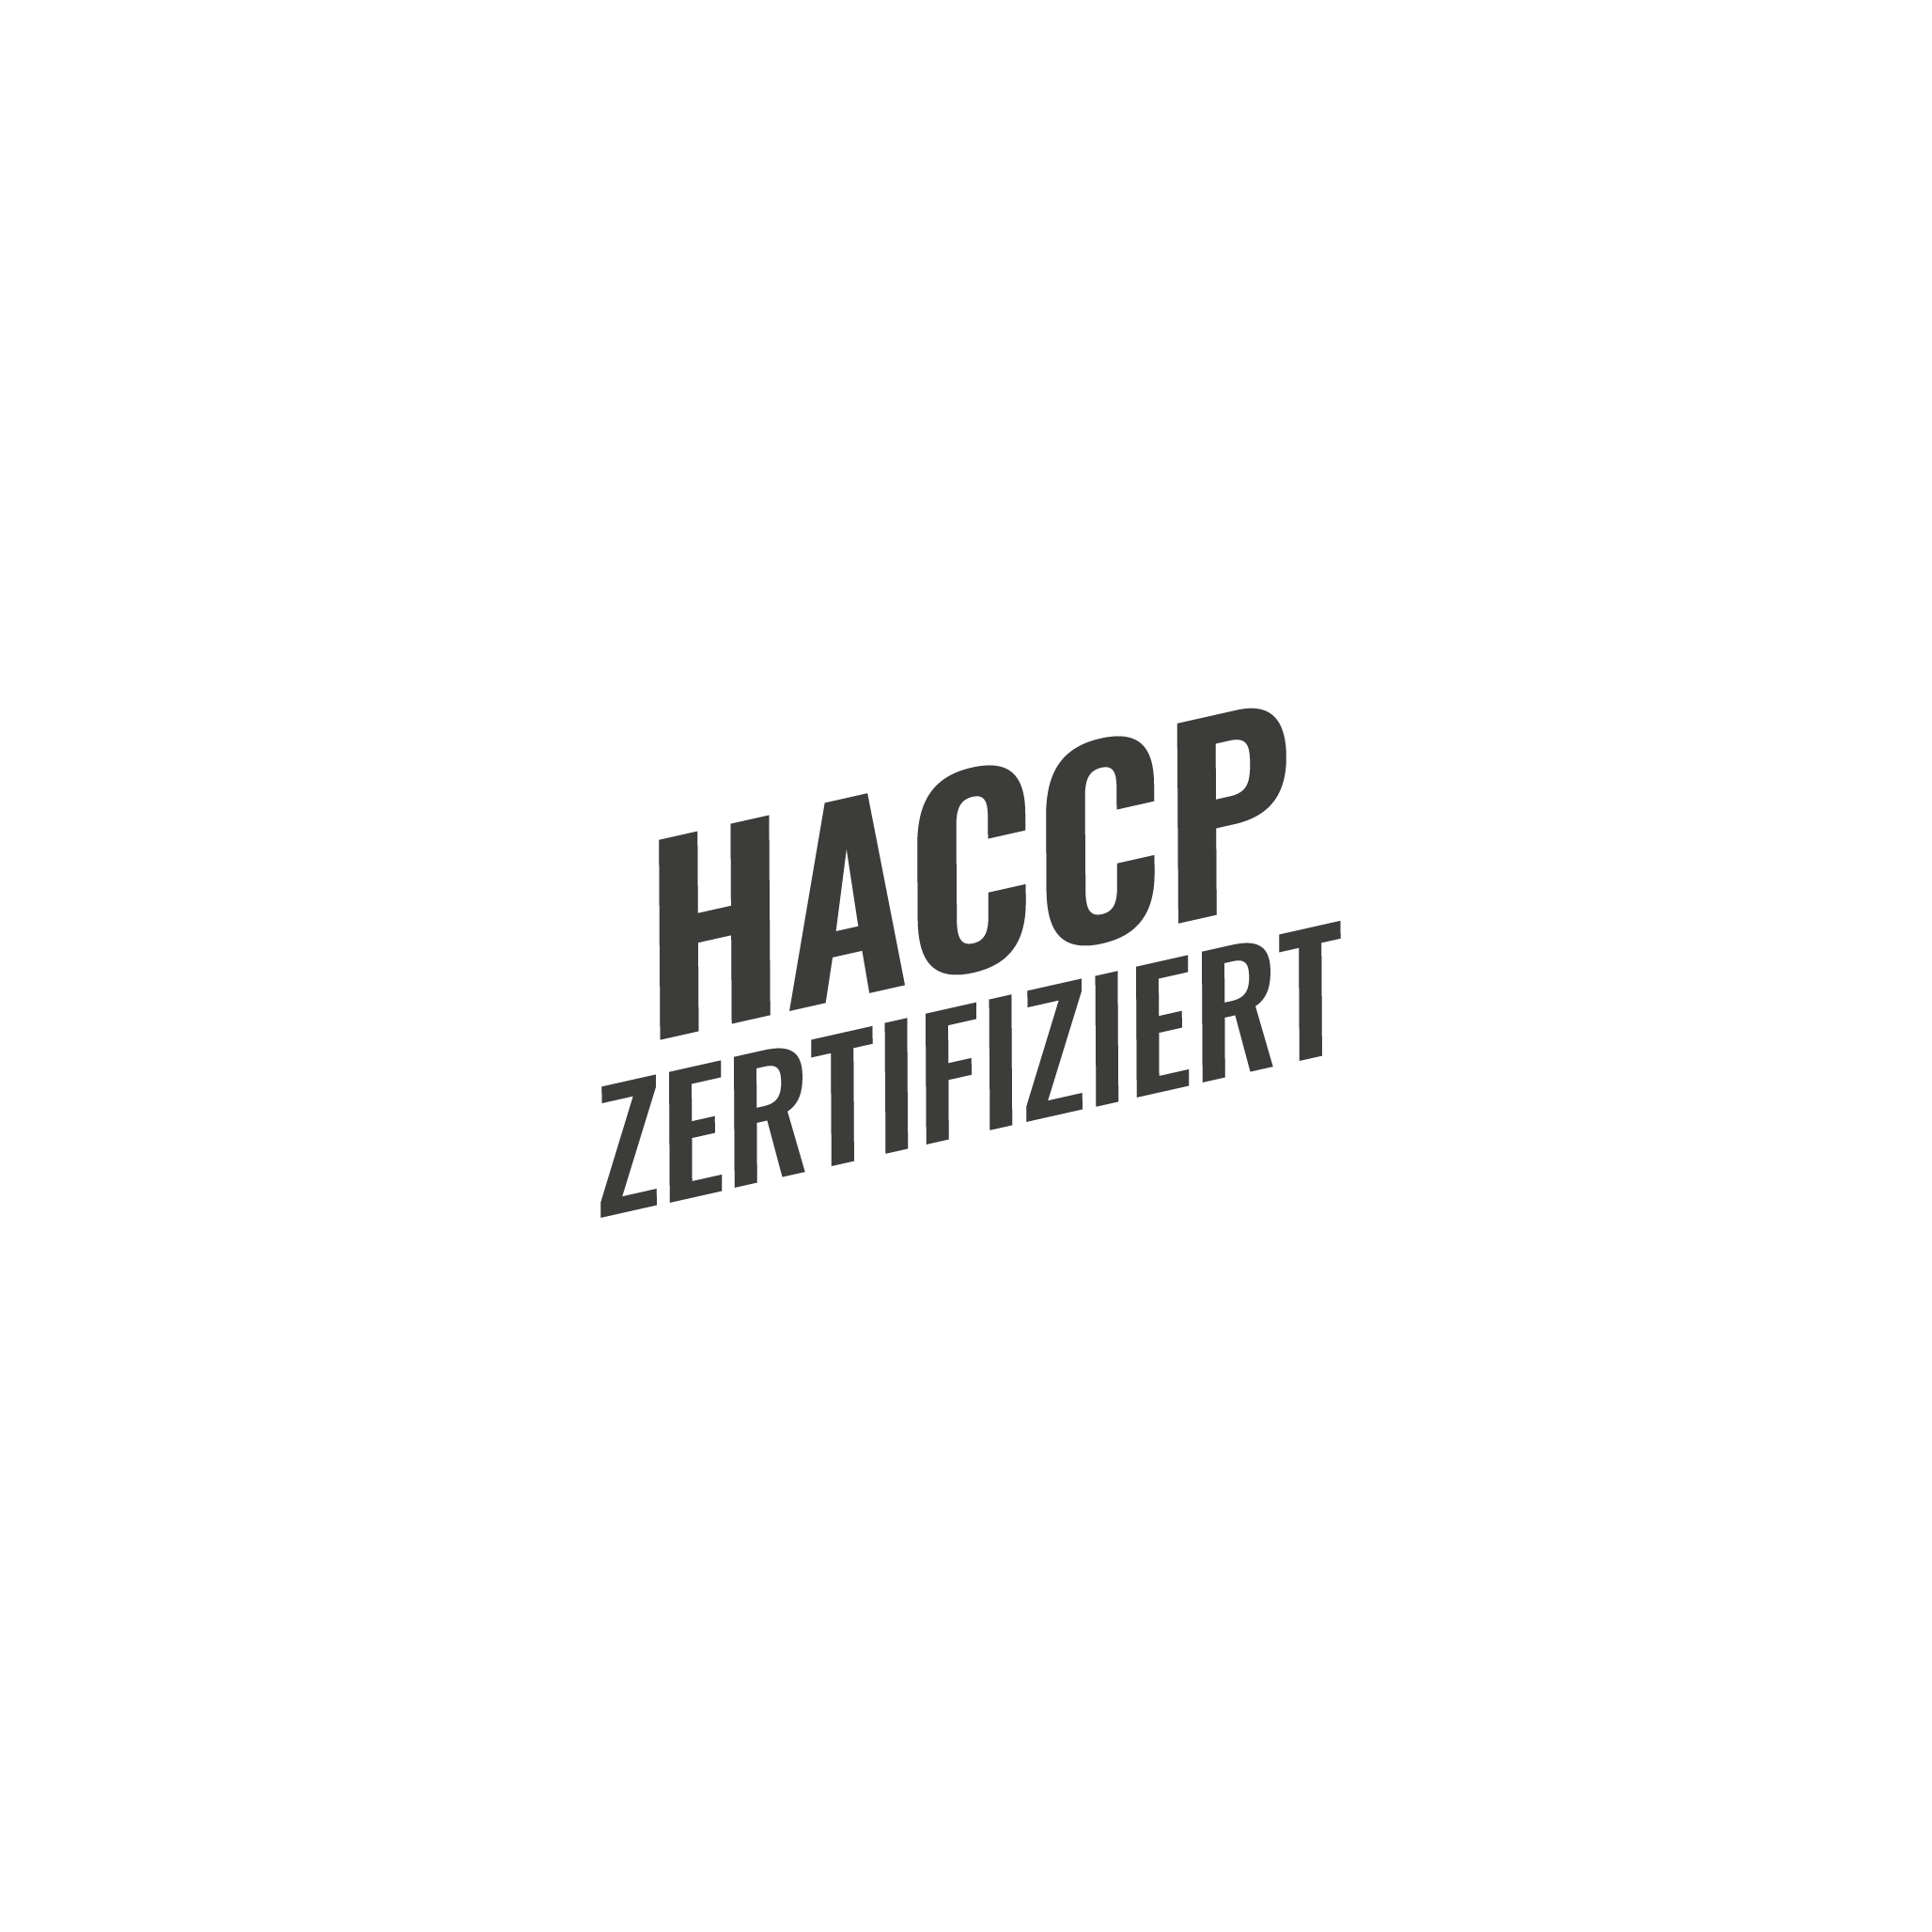 HACCP zertifiziert Badge